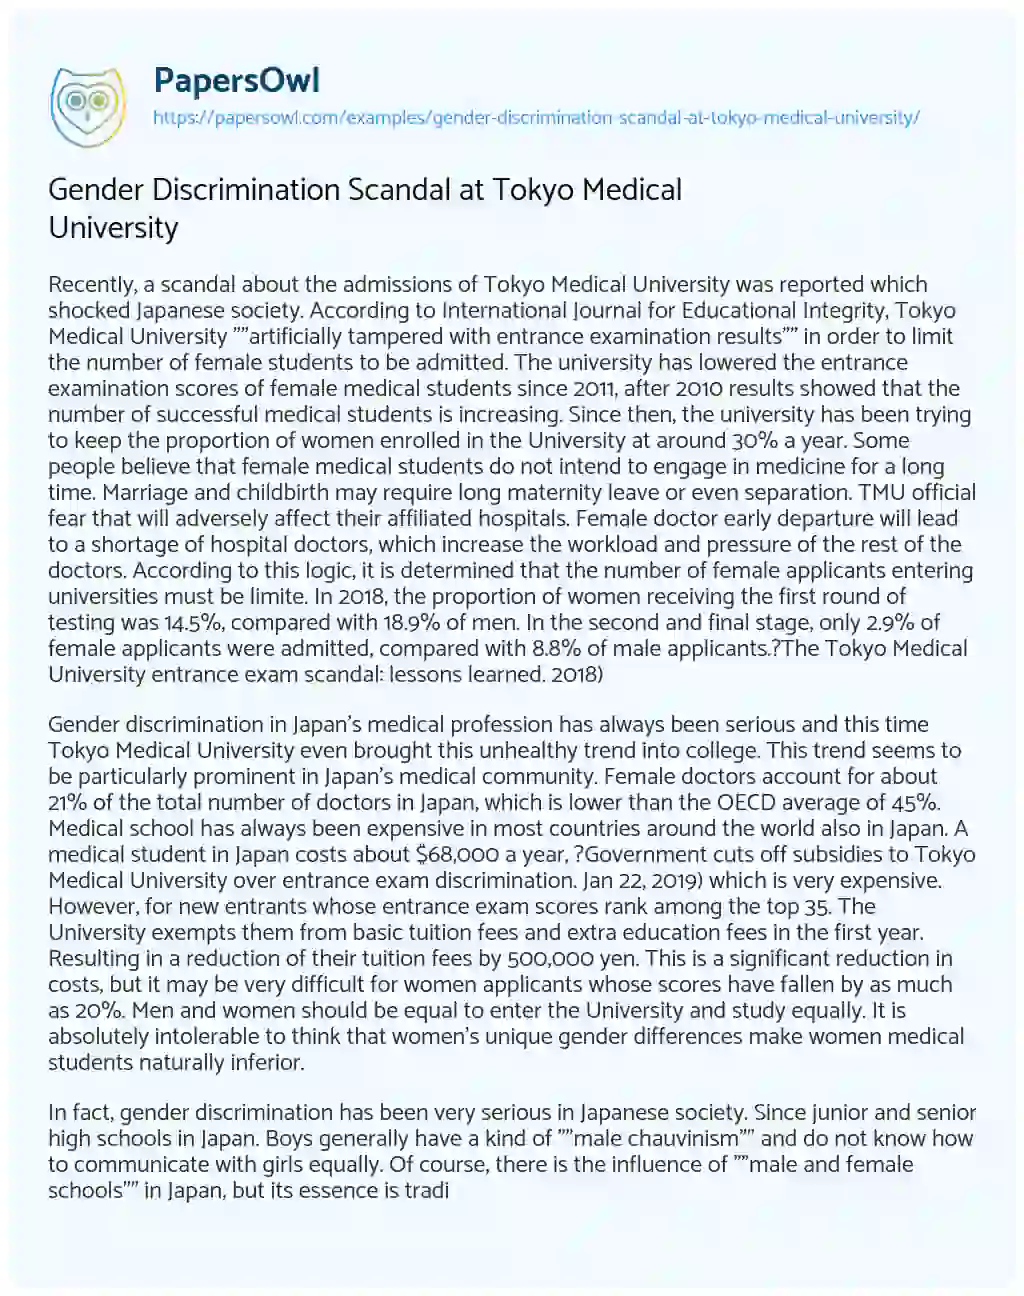 Essay on Gender Discrimination Scandal at Tokyo Medical University